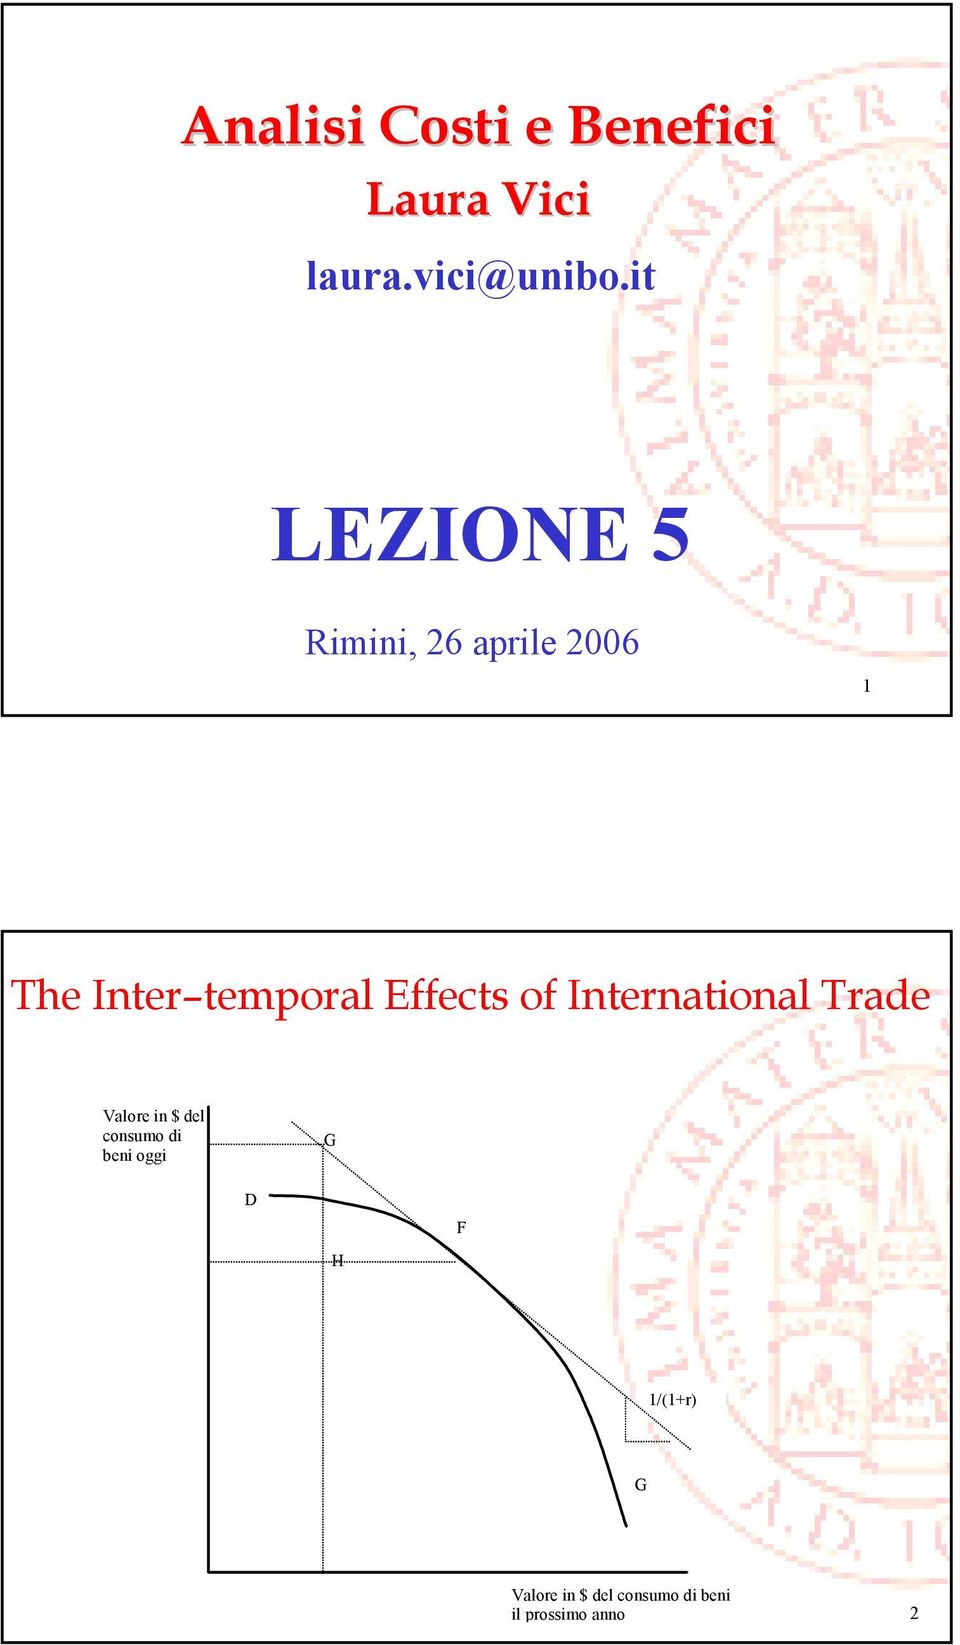 Effects of International Trade Valore in $ del consumo di